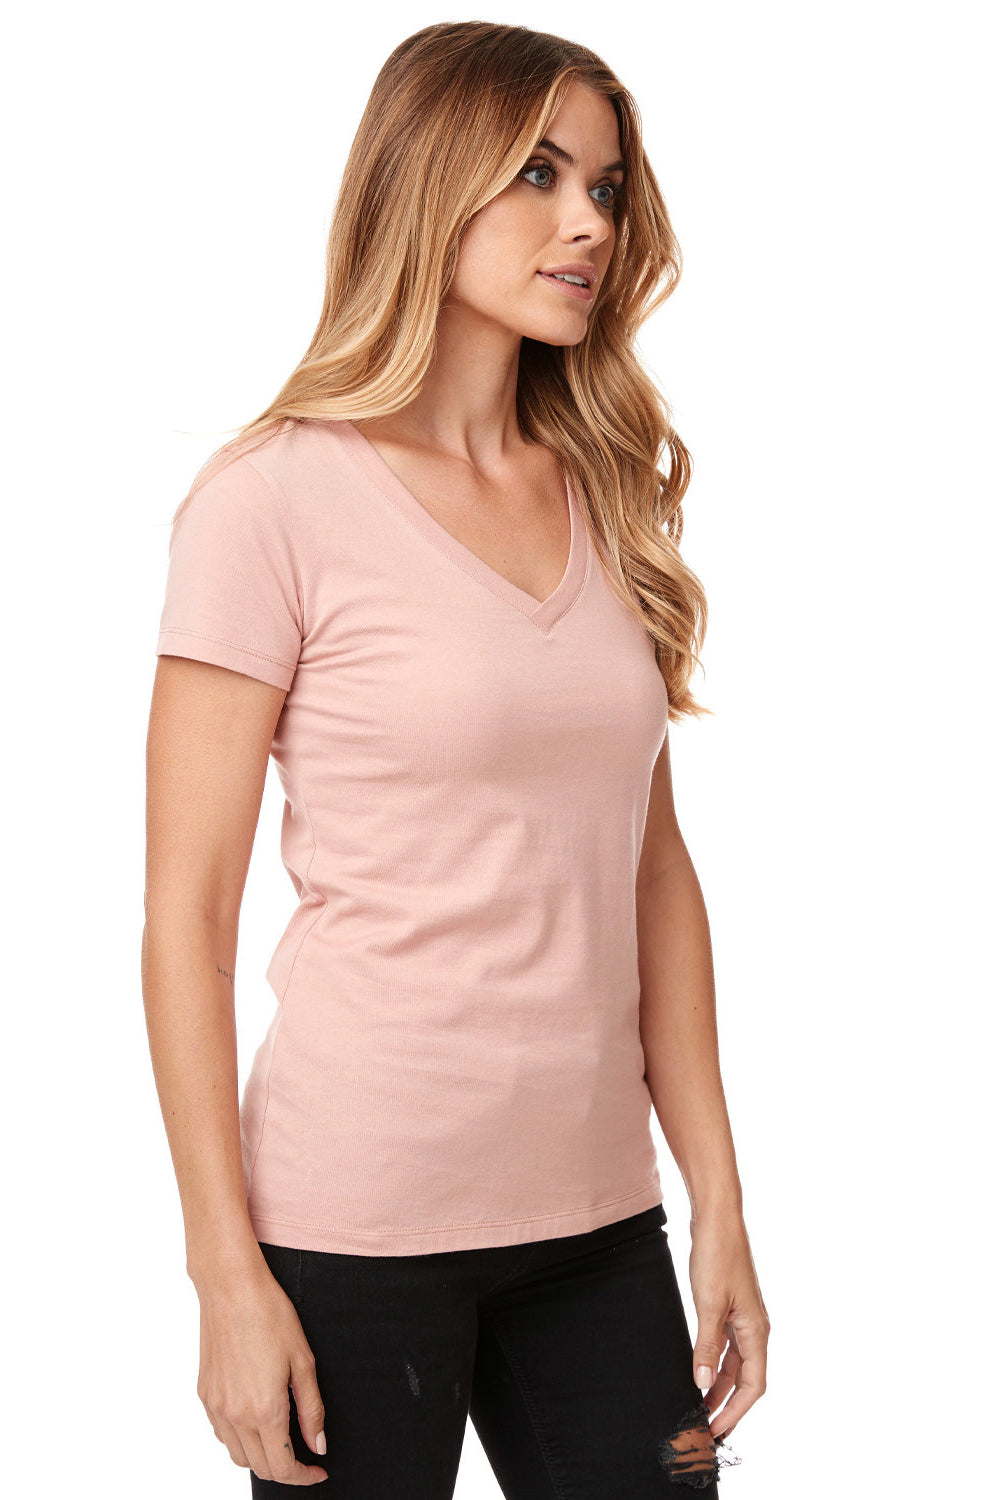 Next Level N1540/1540 Womens Ideal Jersey Short Sleeve V-Neck T-Shirt Desert Pink SIde